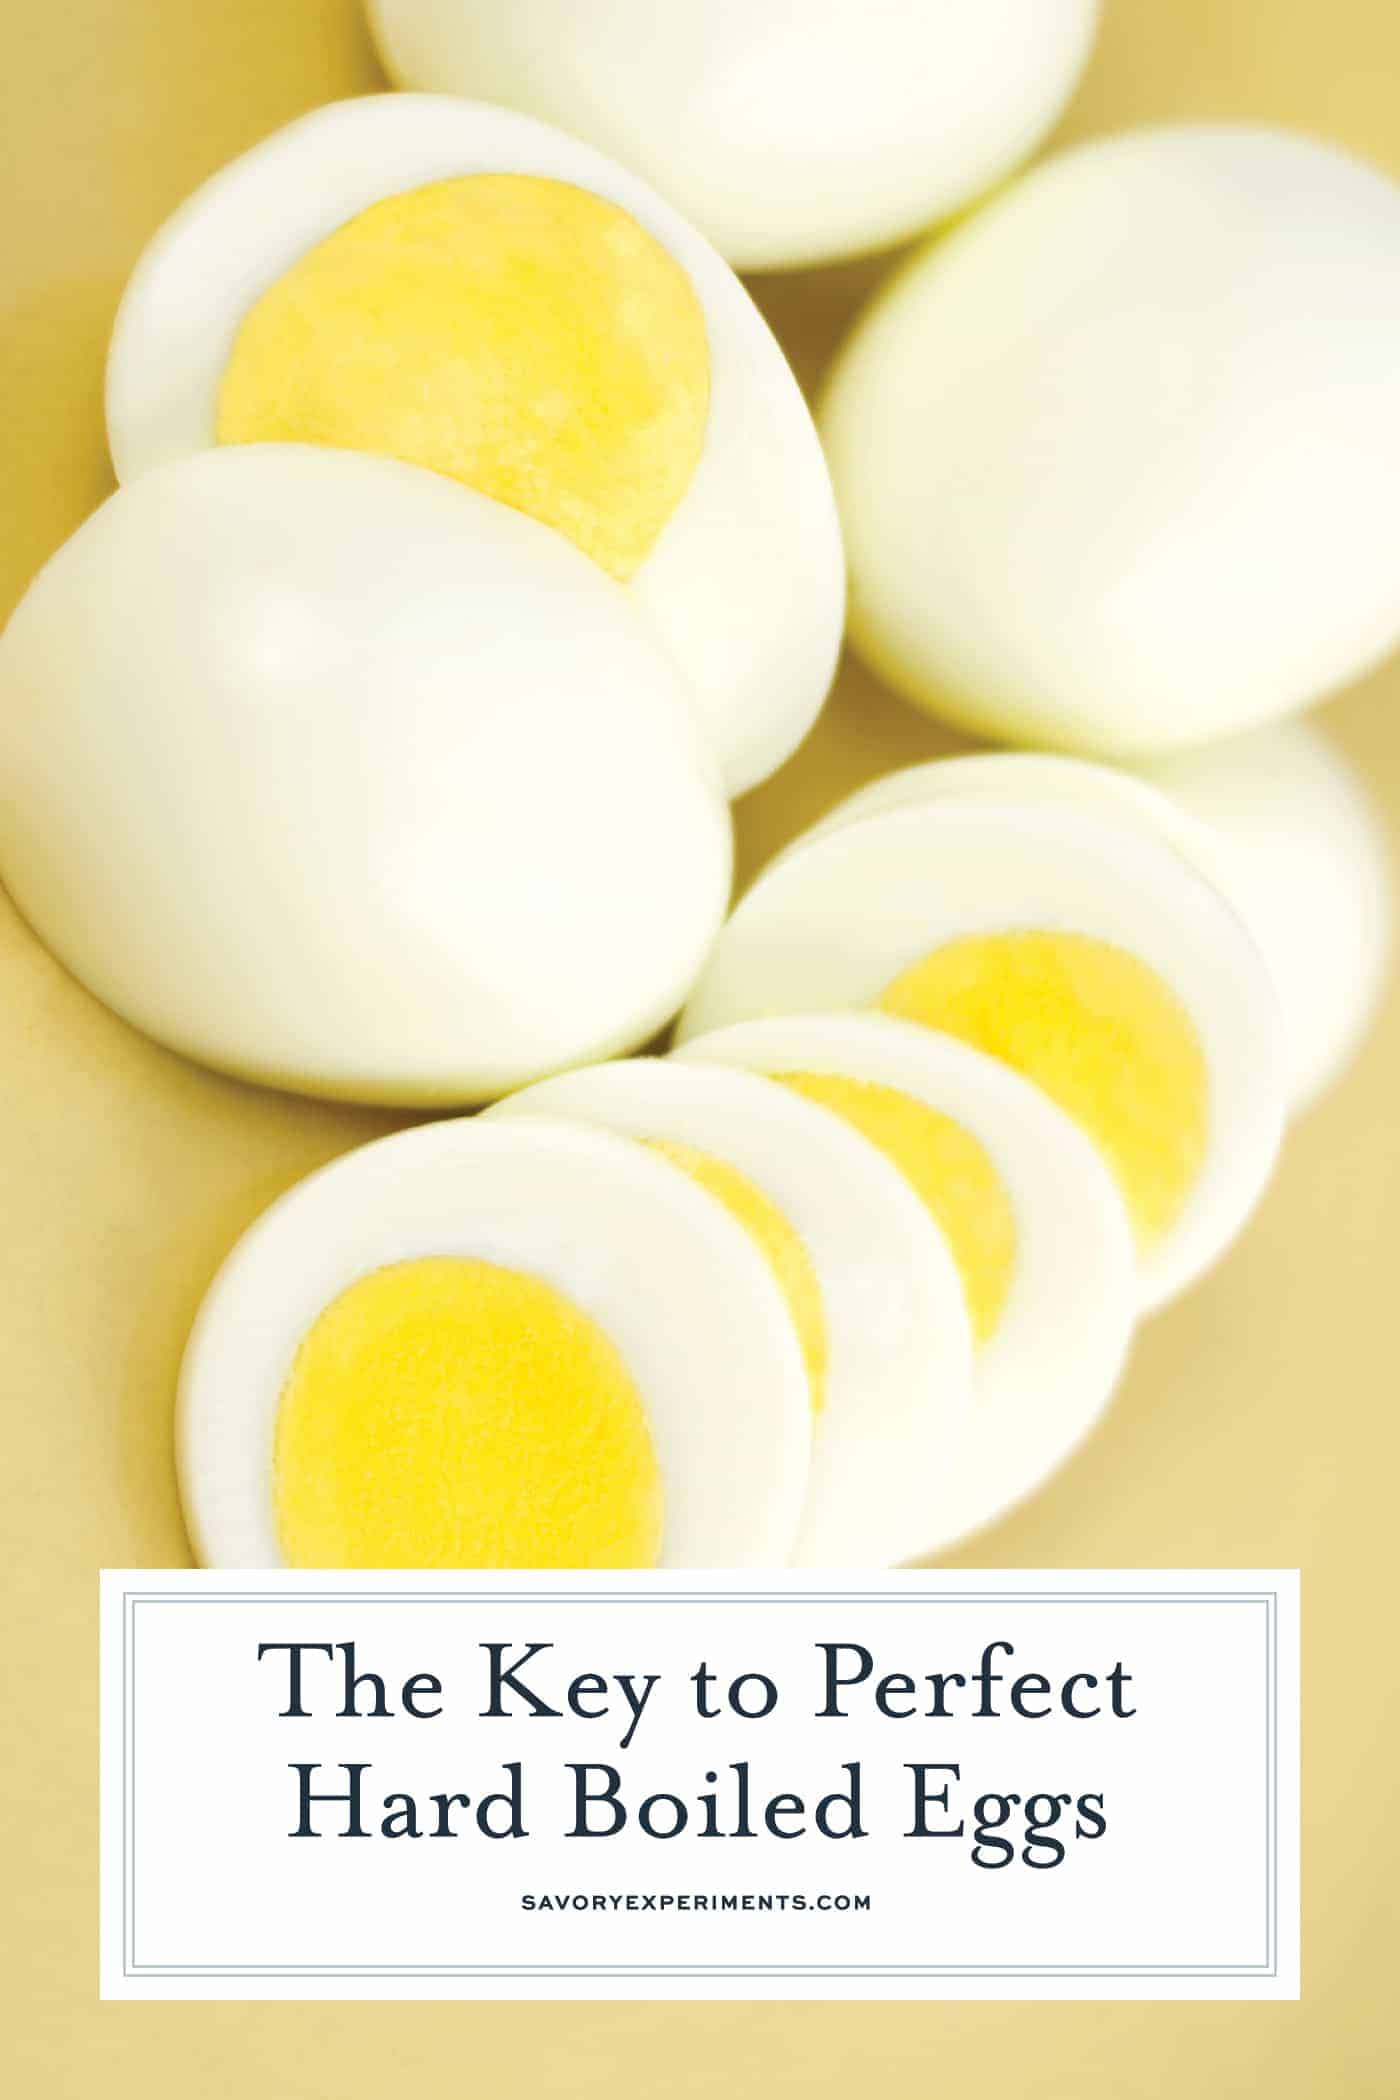 How to Hard Boil Eggs for Pinterest